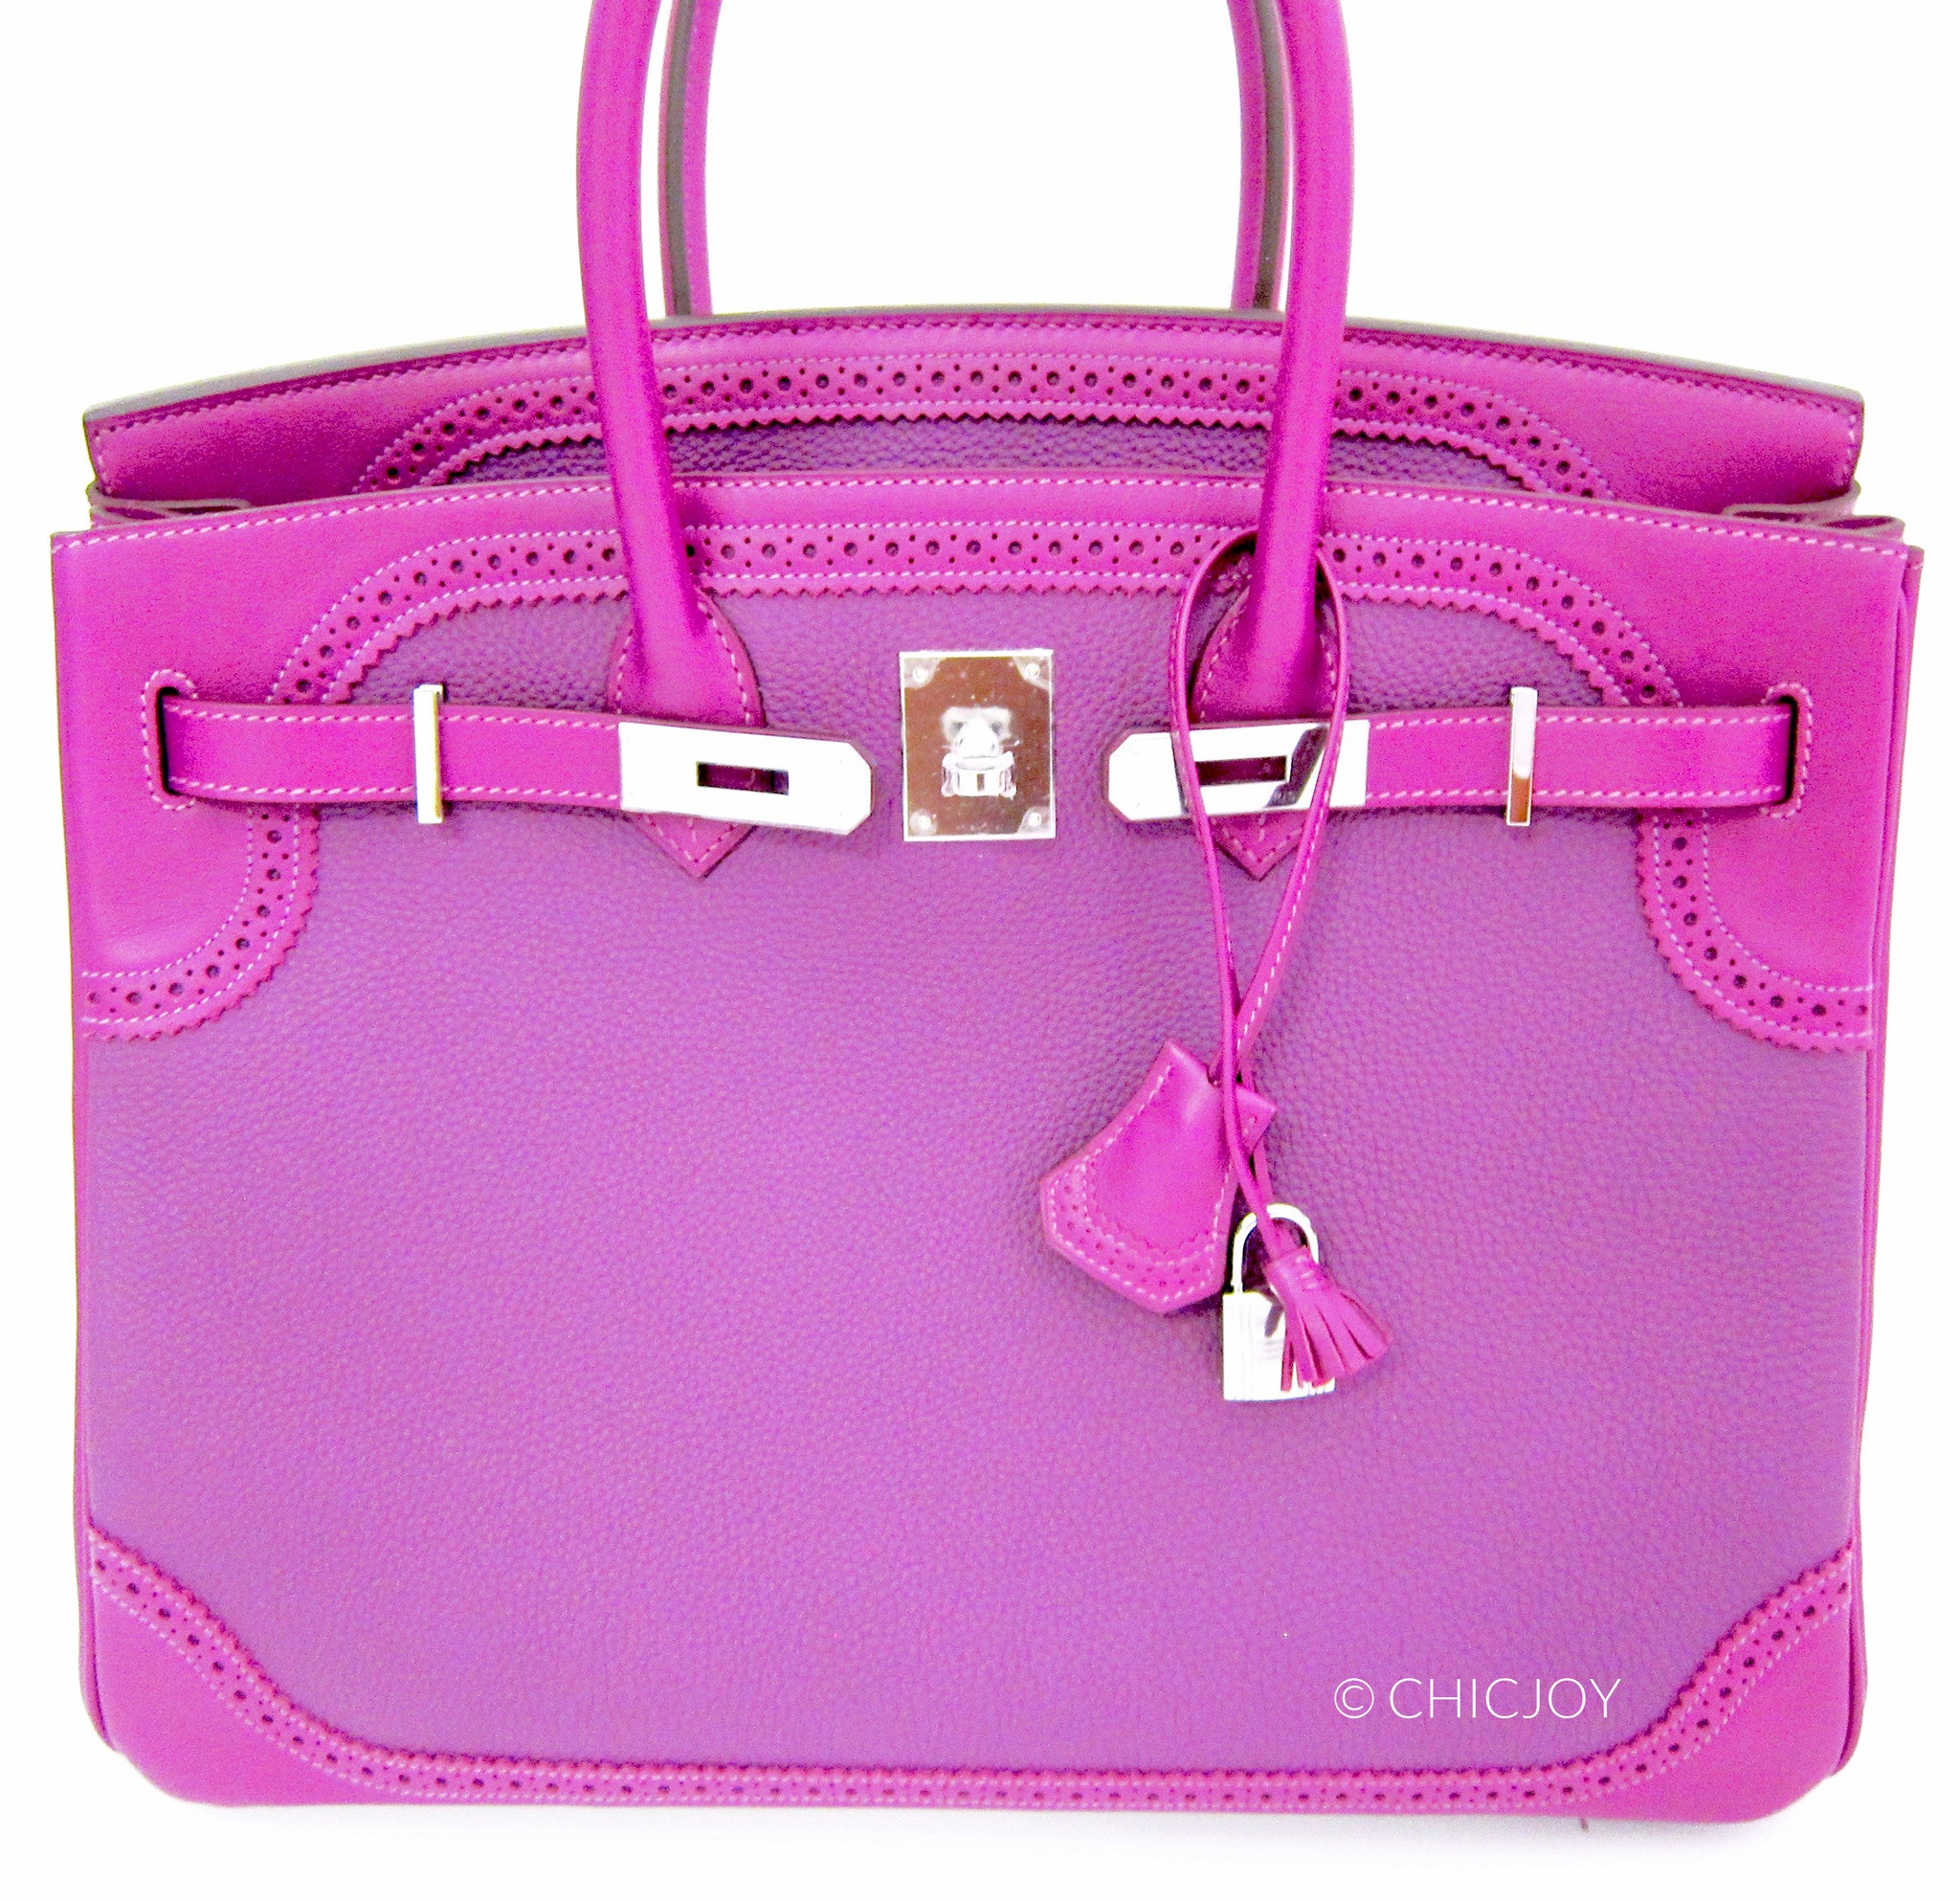 Hot Pink Herme's Birkin Bag 35cm  Hermes bag birkin, Birkin bag, Bags